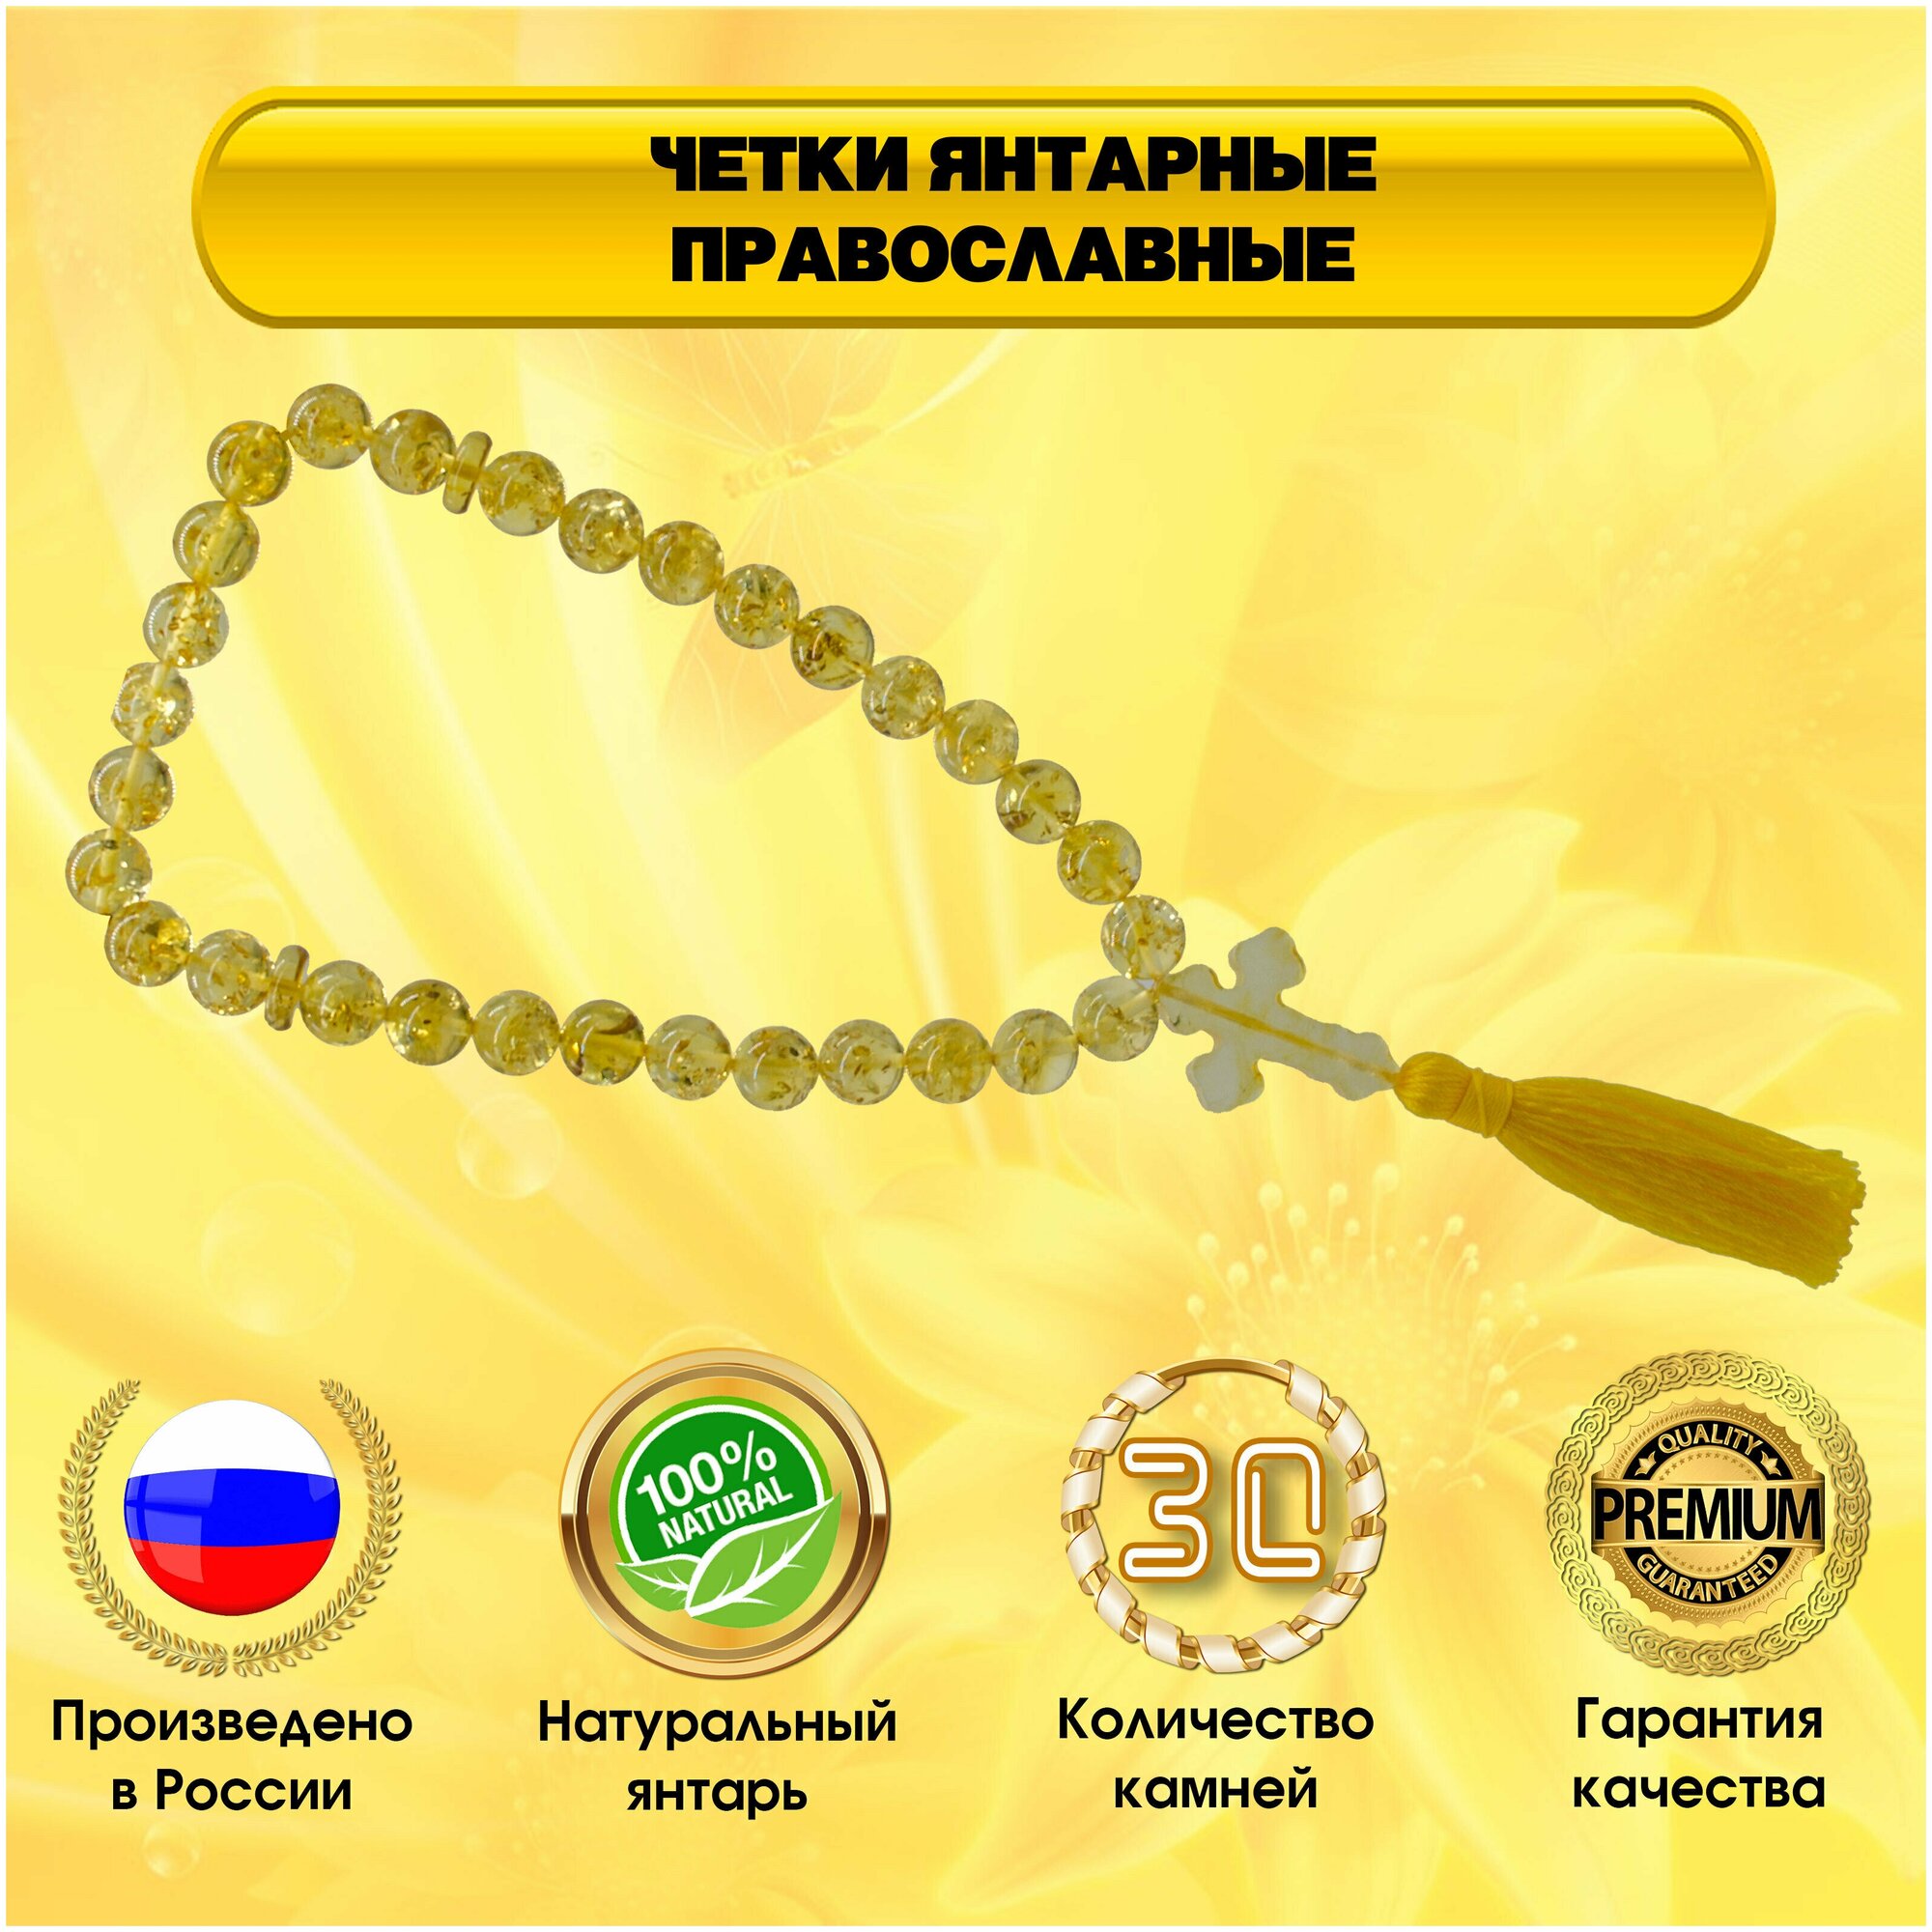 Четки - янтарные православные с крестом 30 камней (бусин). Диаметр бусин 10 мм. Желтый янтарь 